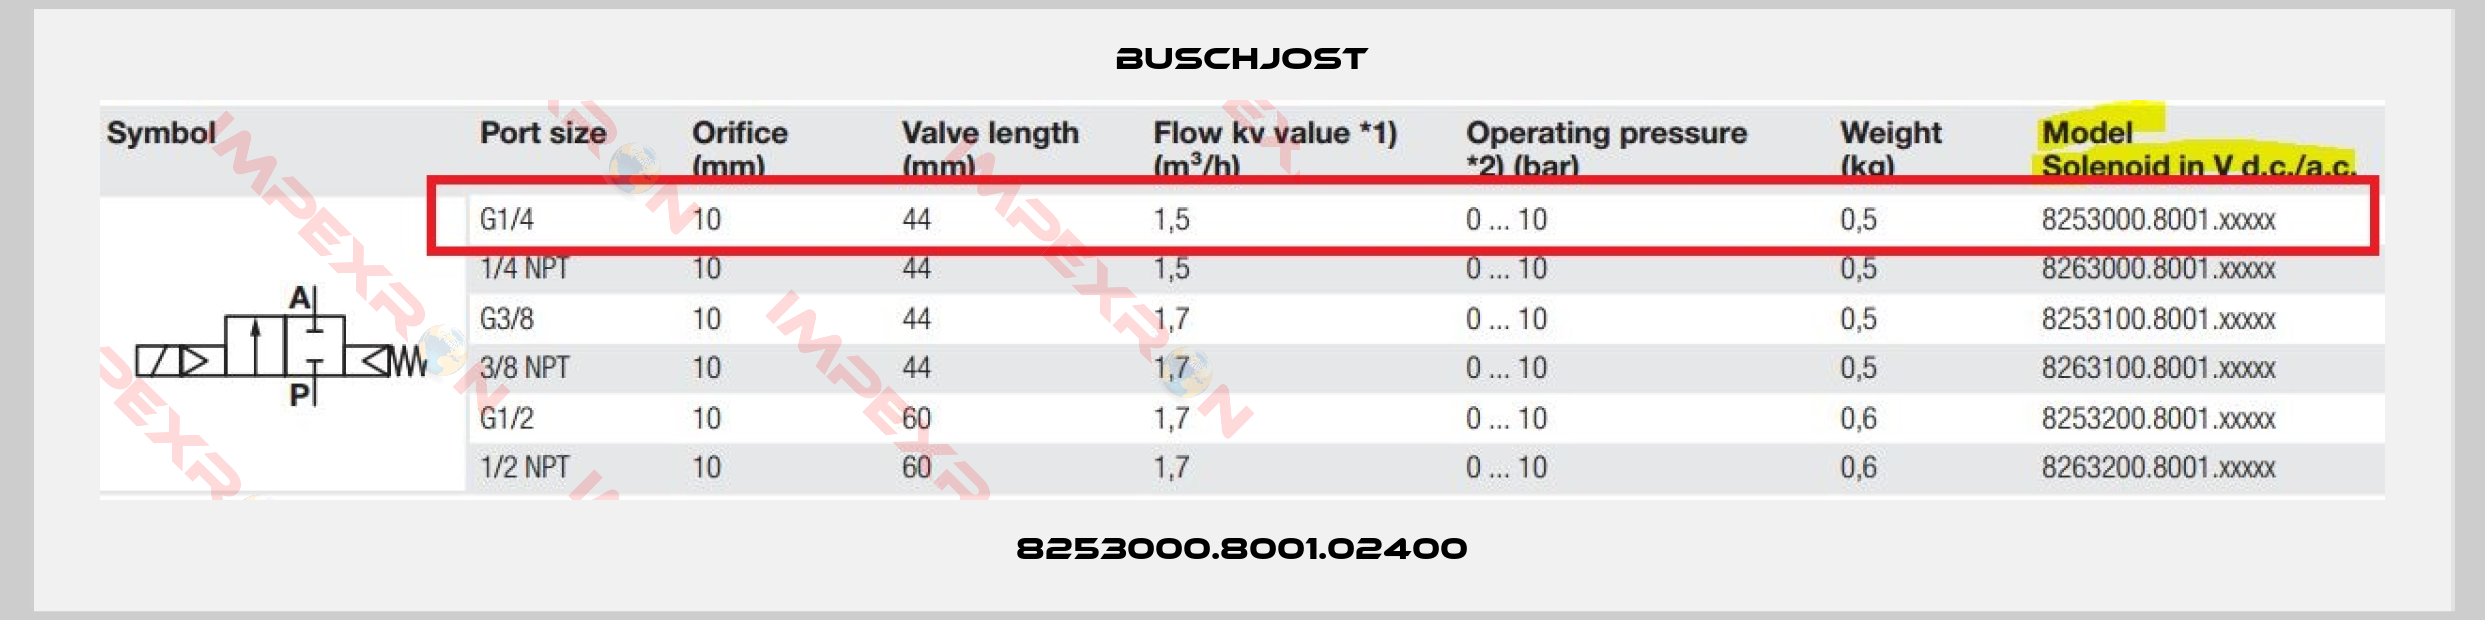 Buschjost-8253000.8001.02400